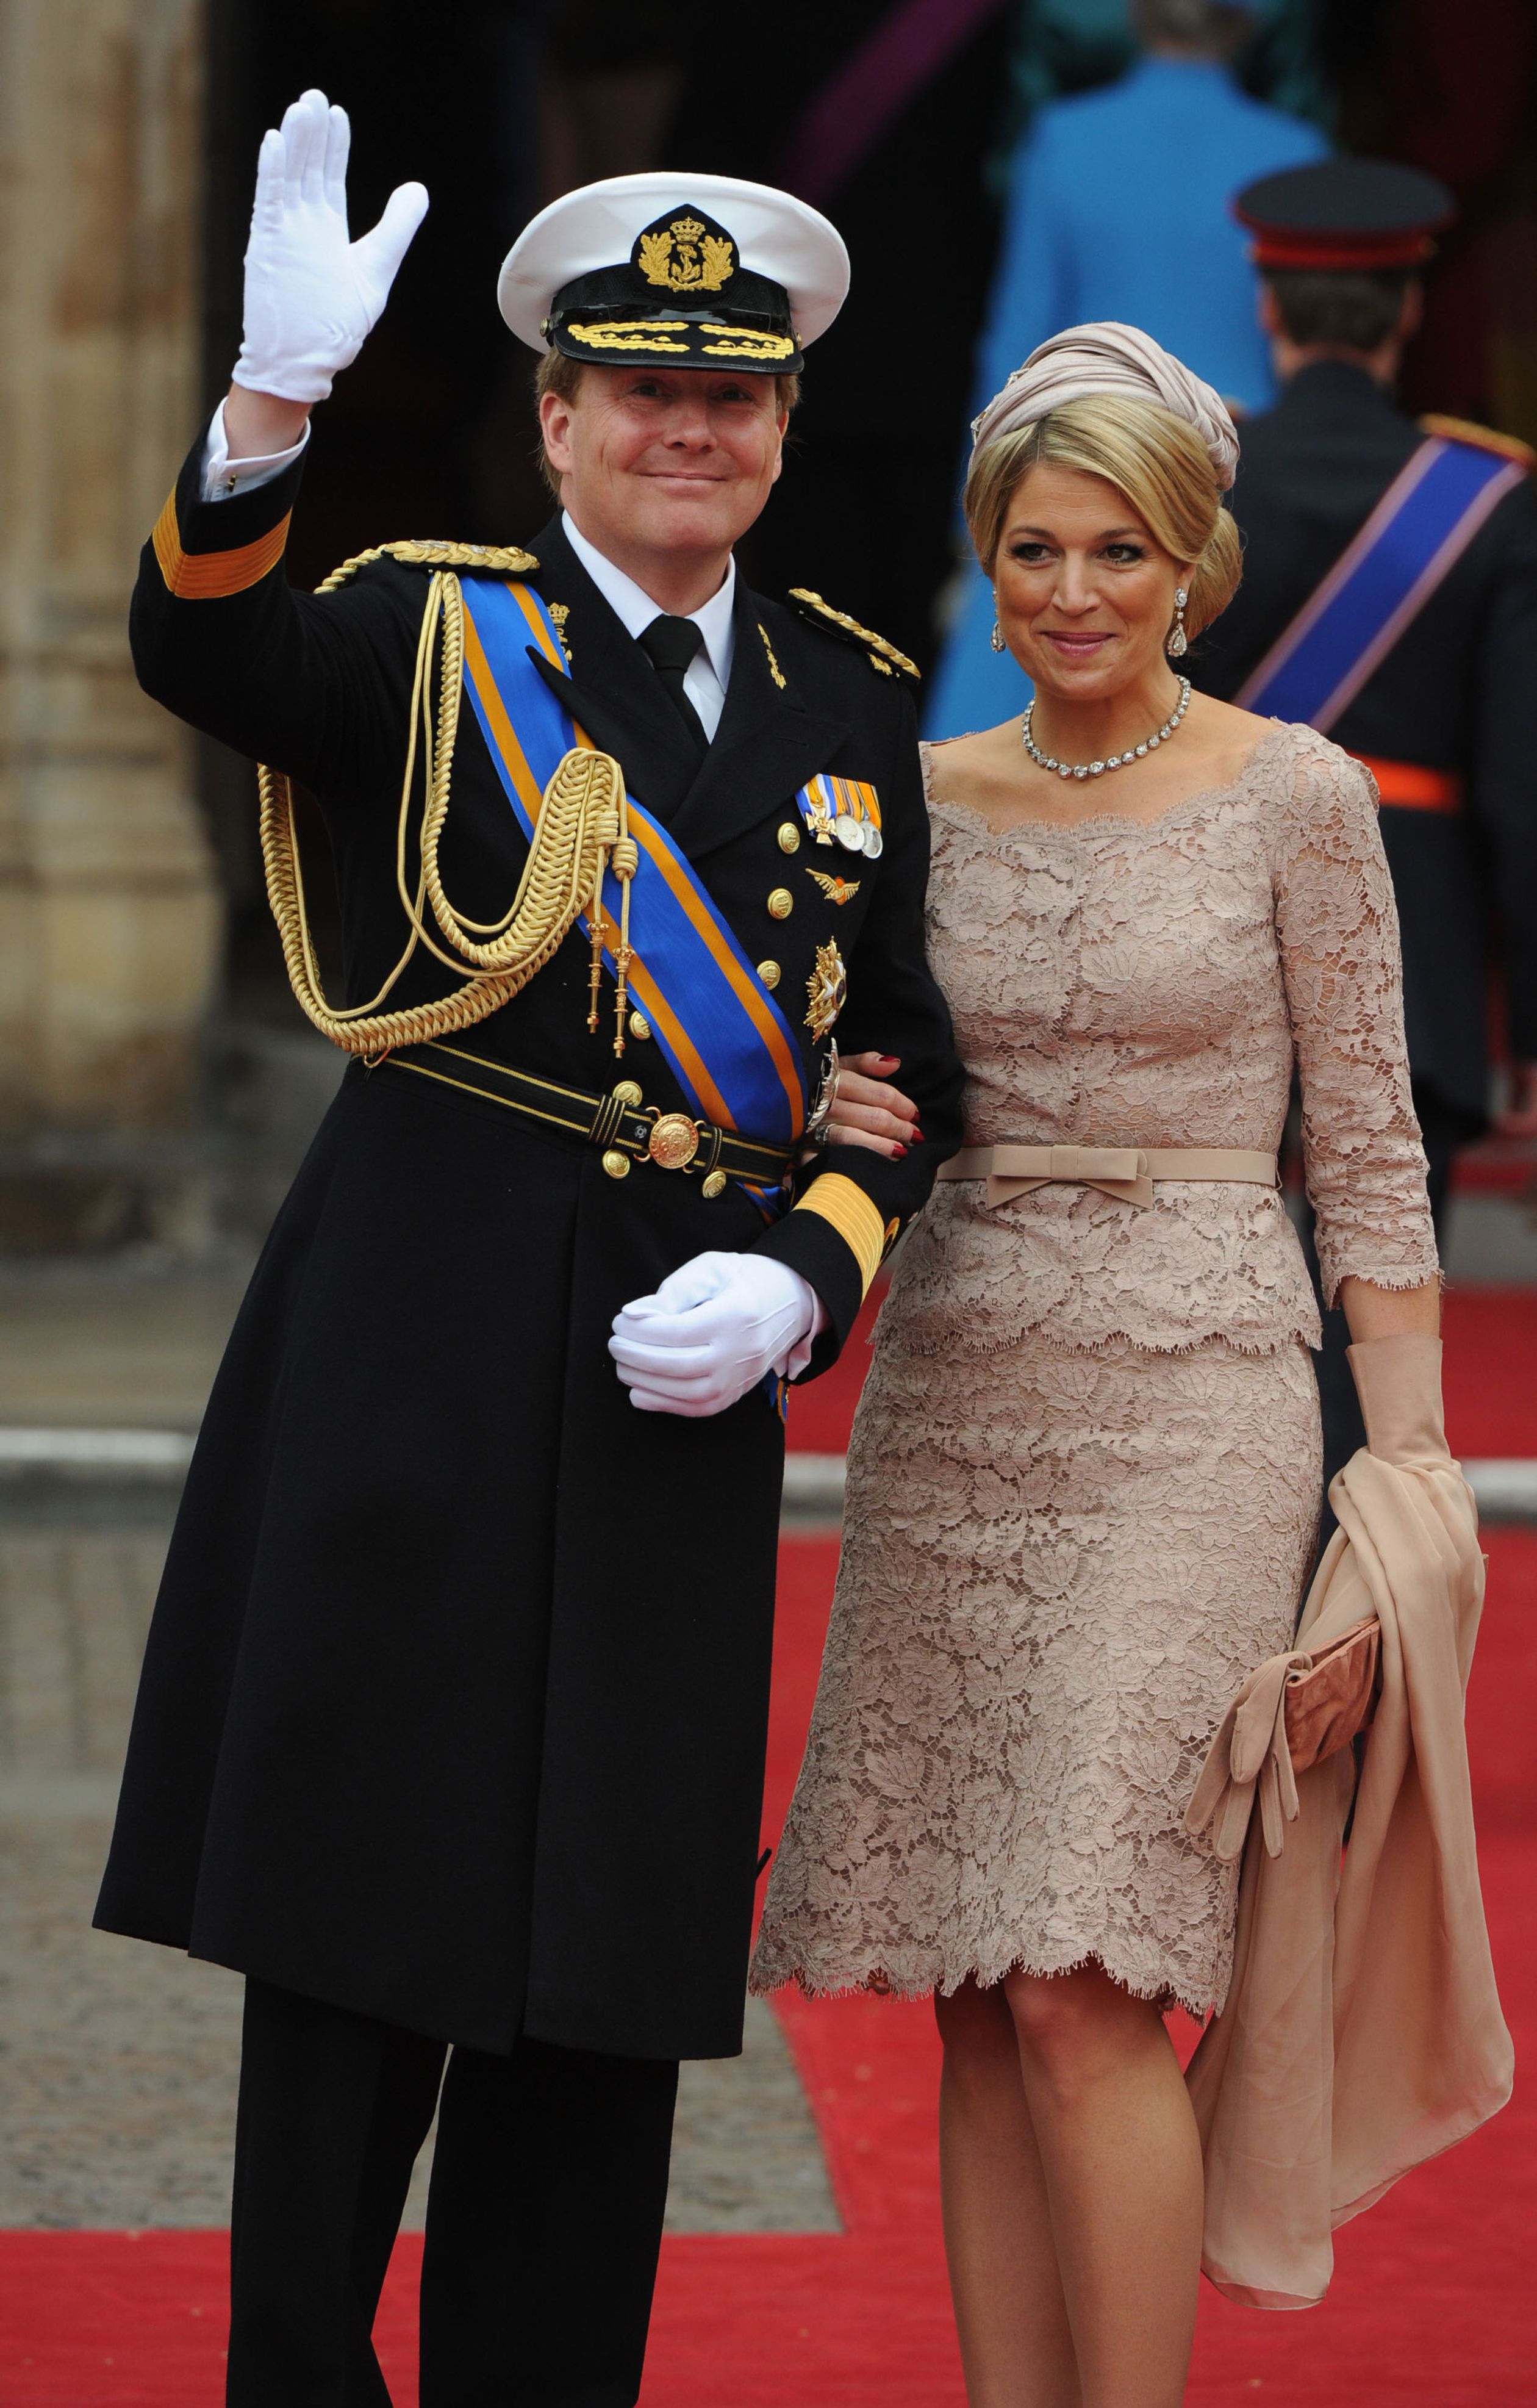 Koning Willem-Alexander en koningin Máxima, toen nog prins en prinses, komen aan bij de kerk.